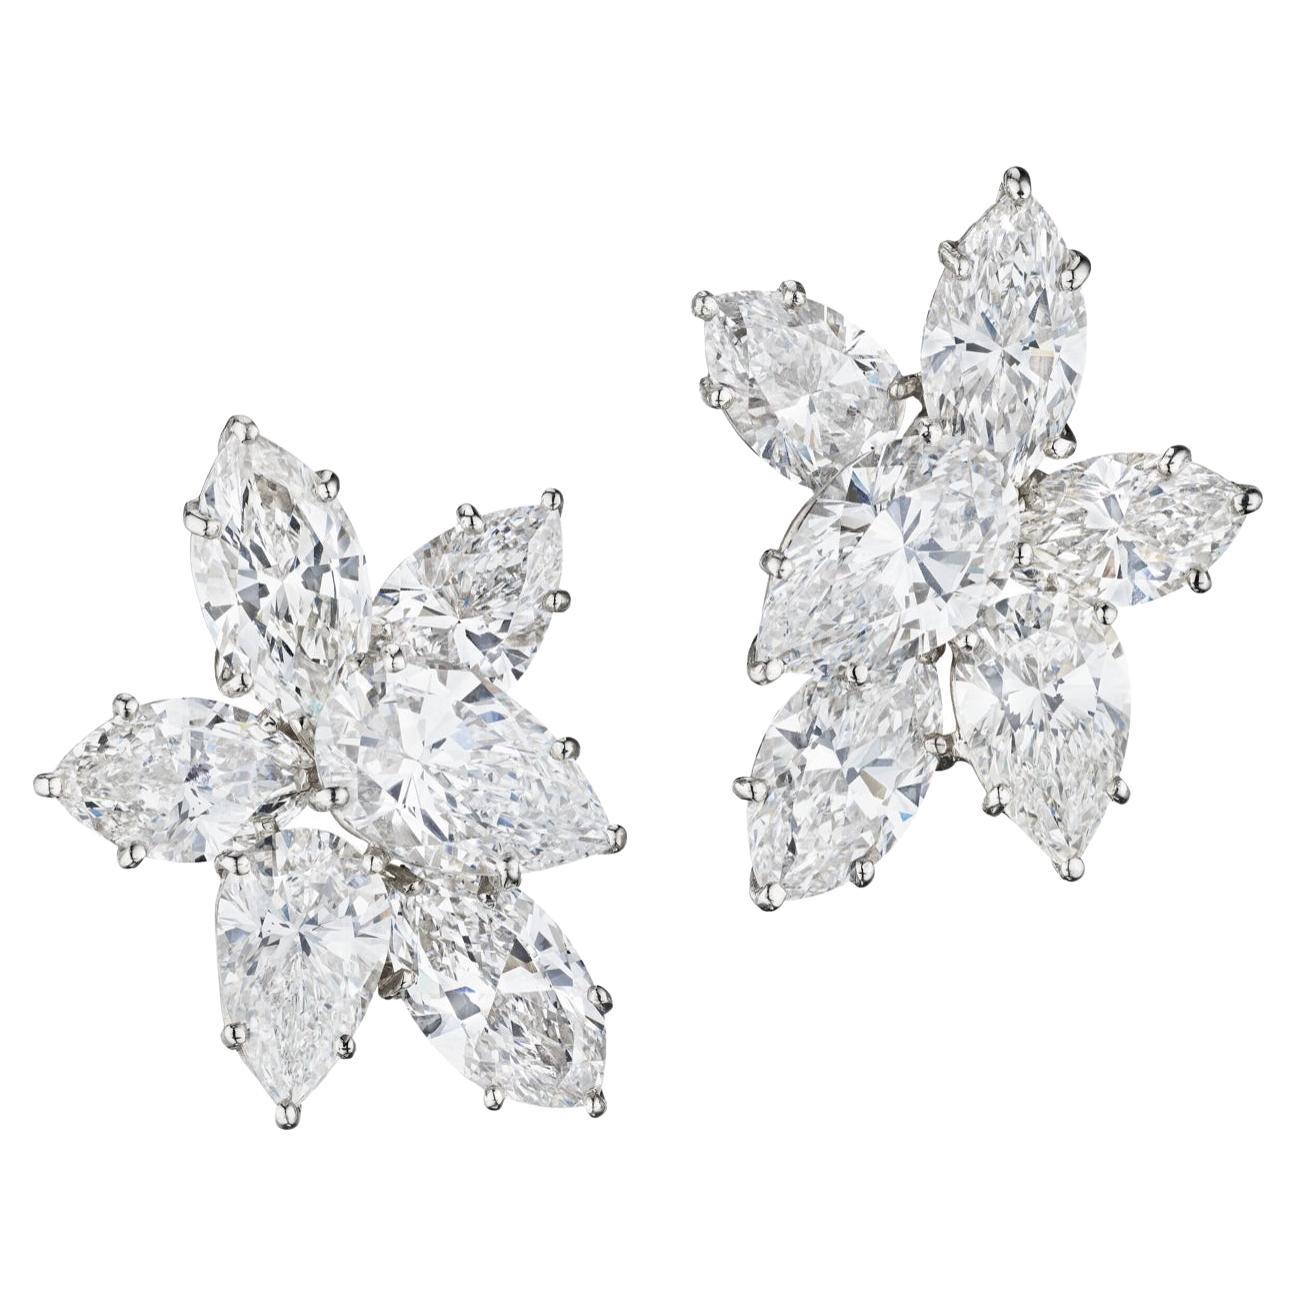  Harry Winston Diamond Cluster Earrings.